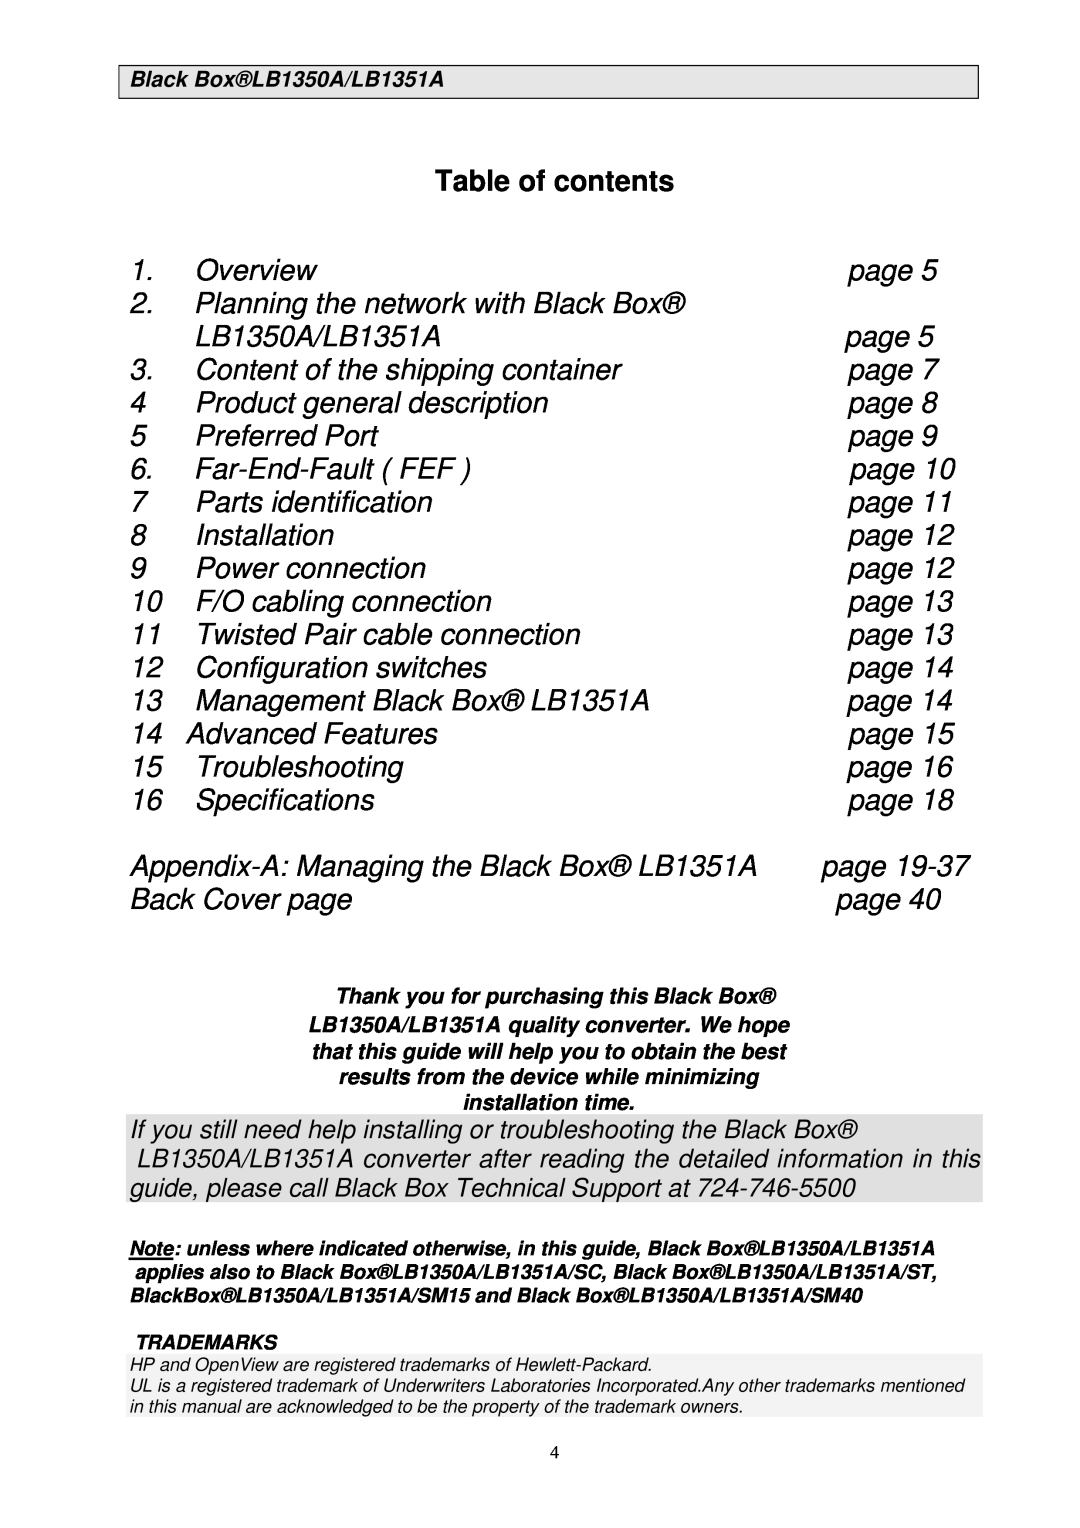 Black Box manual Table of contents, Black BoxLB1350A/LB1351A 